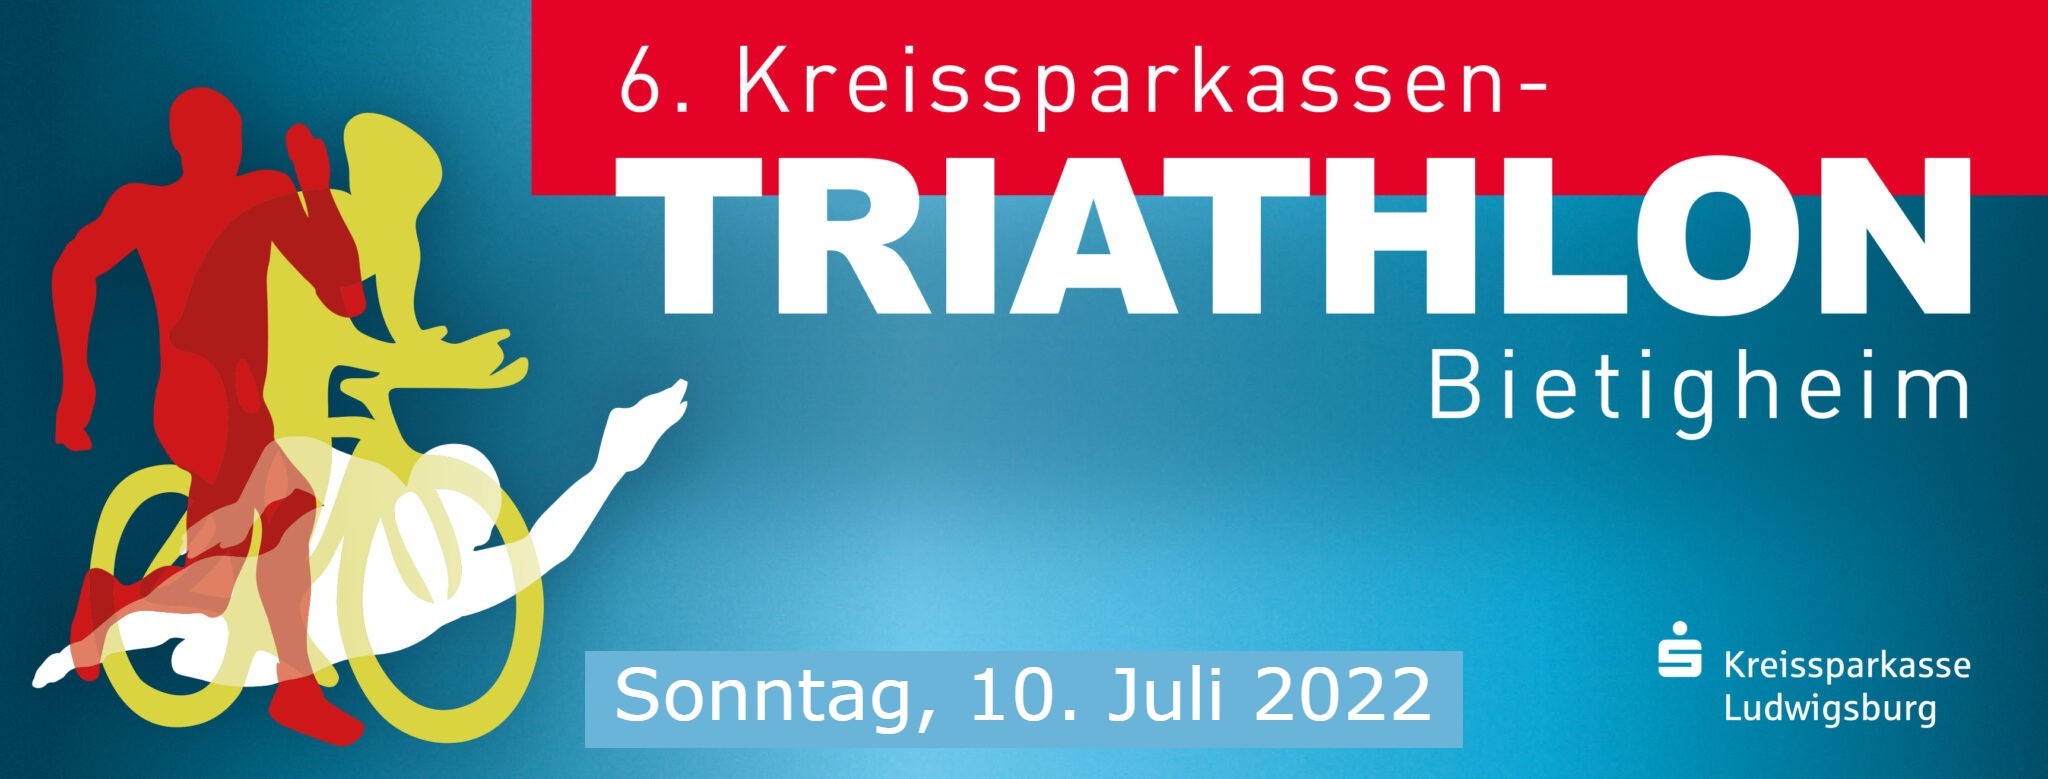 6. Kreissparkassen-Triathlon Bietigheim 2022